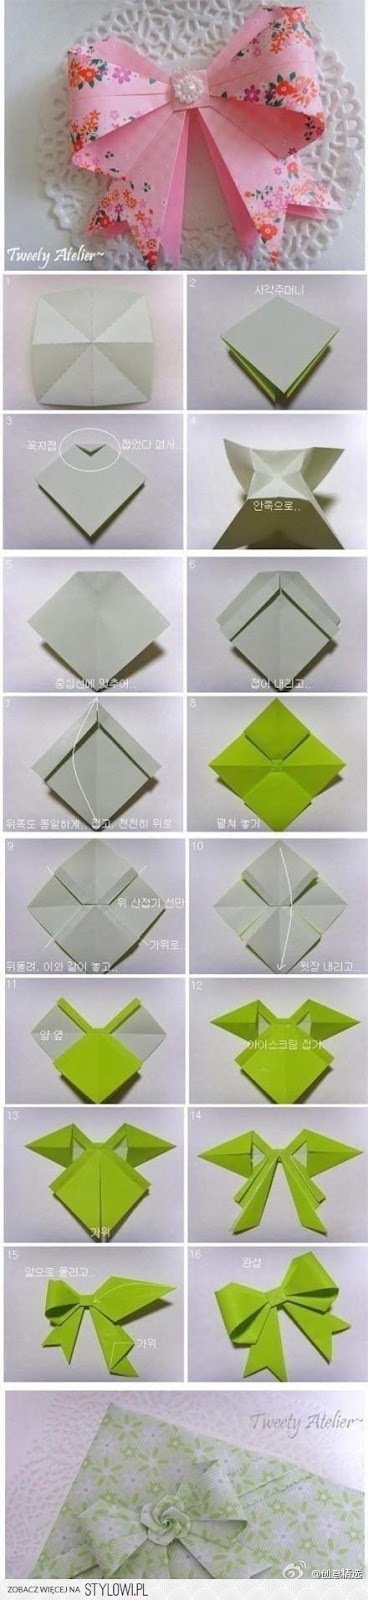 اتمنى تعجبكم Origami3